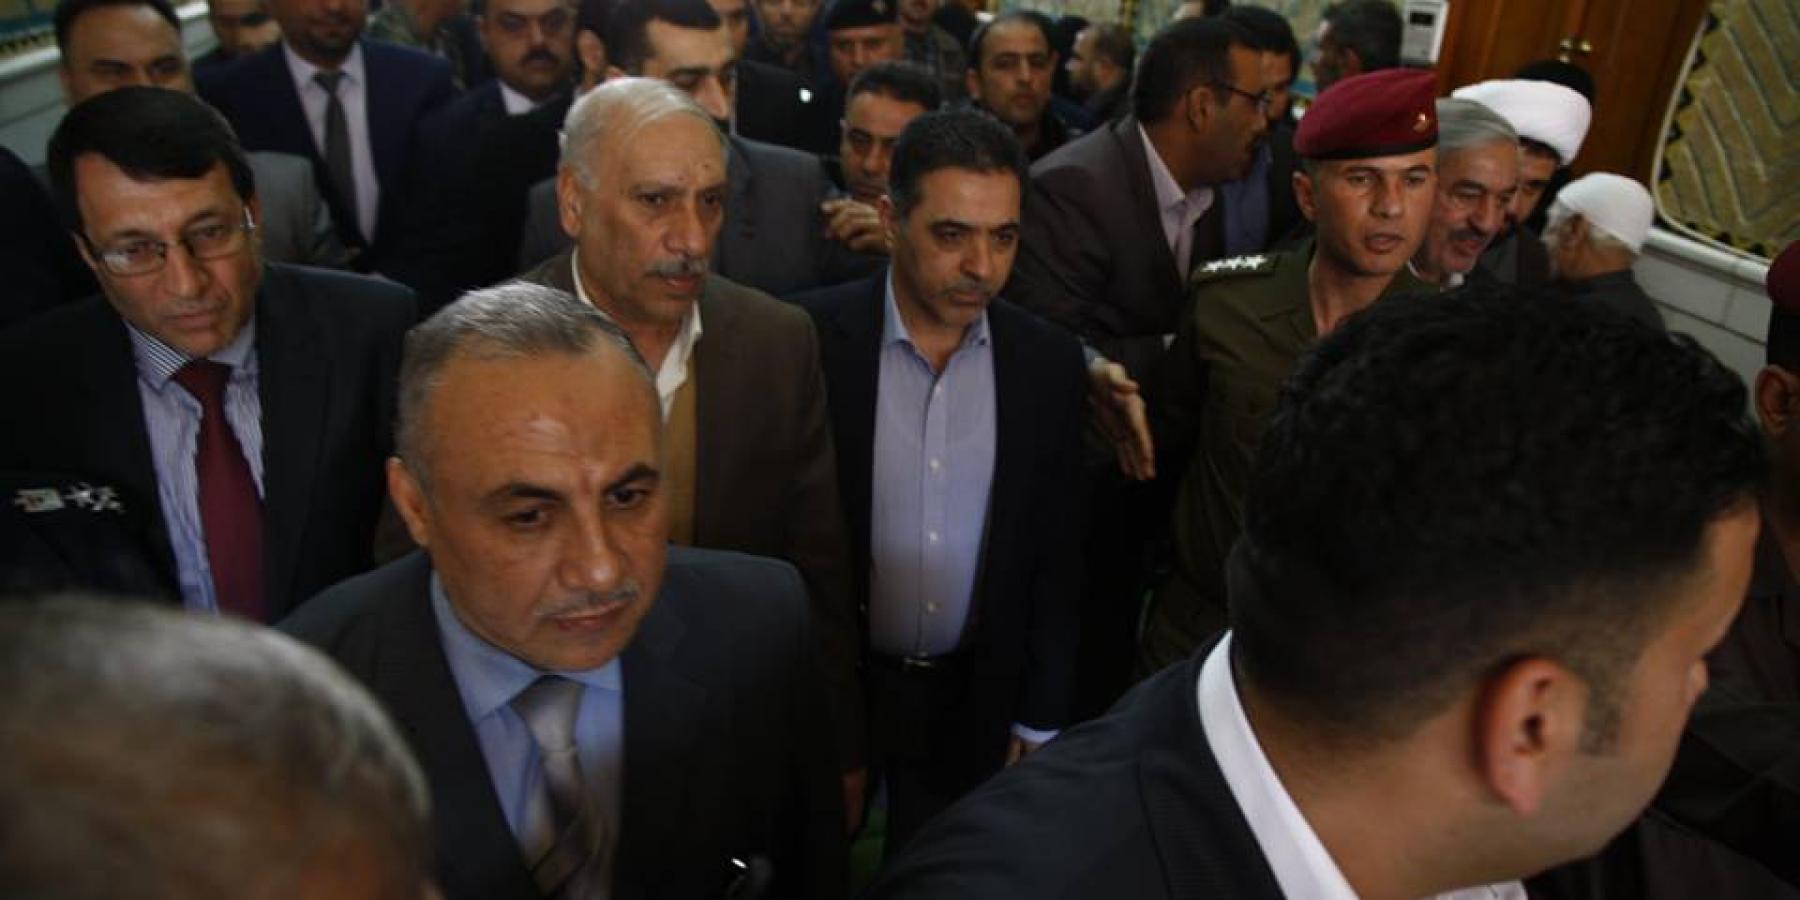 وزير الداخلية محمد سالم الغبان والوفد المرافق له يتشرف بزيارة العتبة العلوية المقدسة